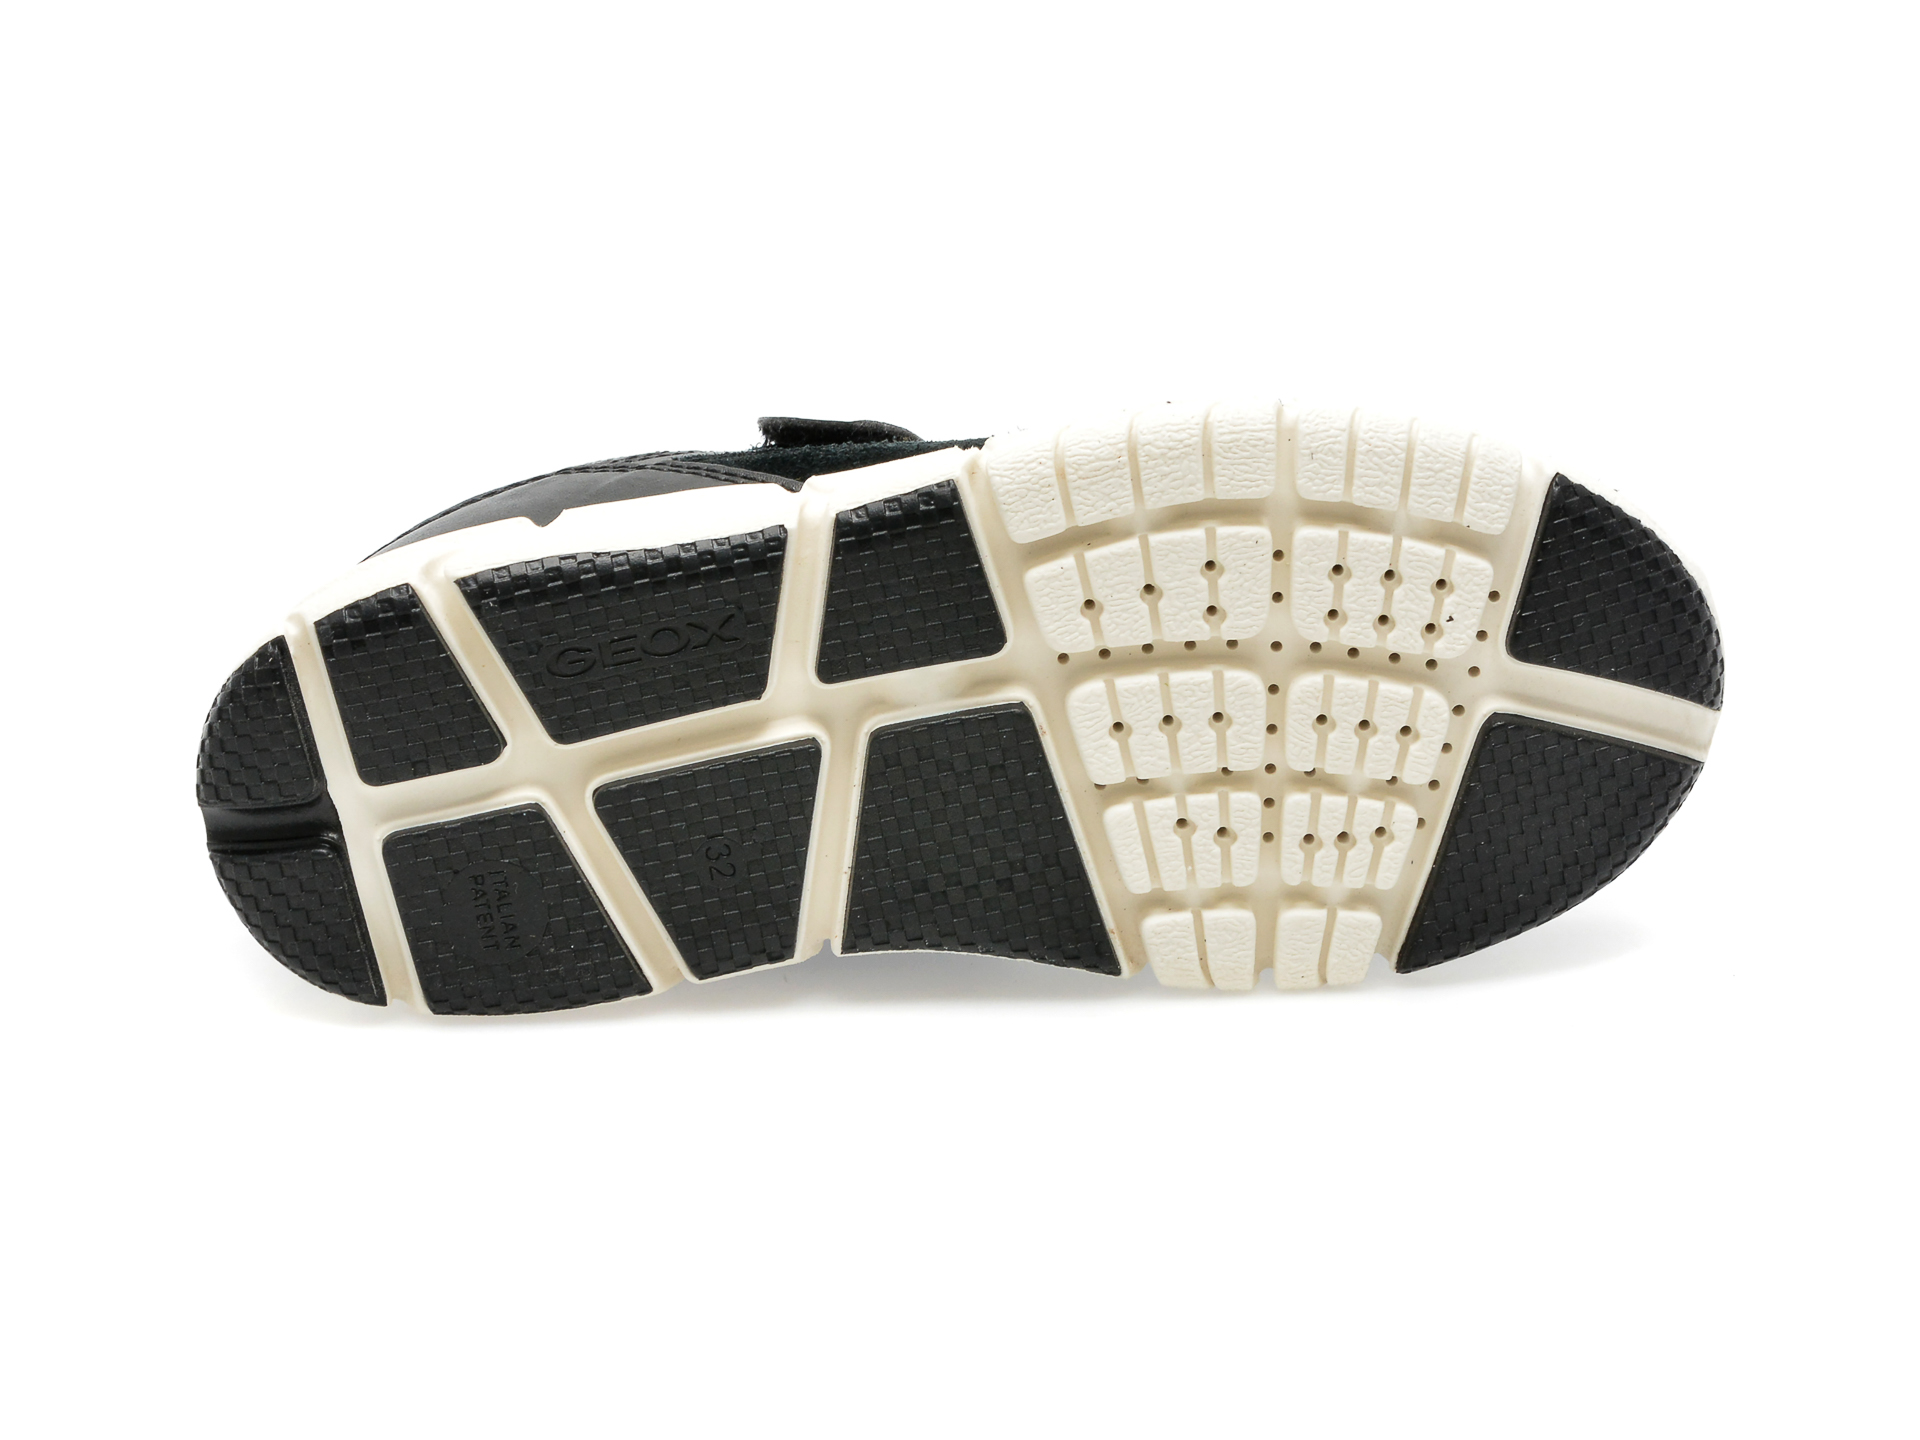 Pantofi GEOX negri, J359BB, din material textil